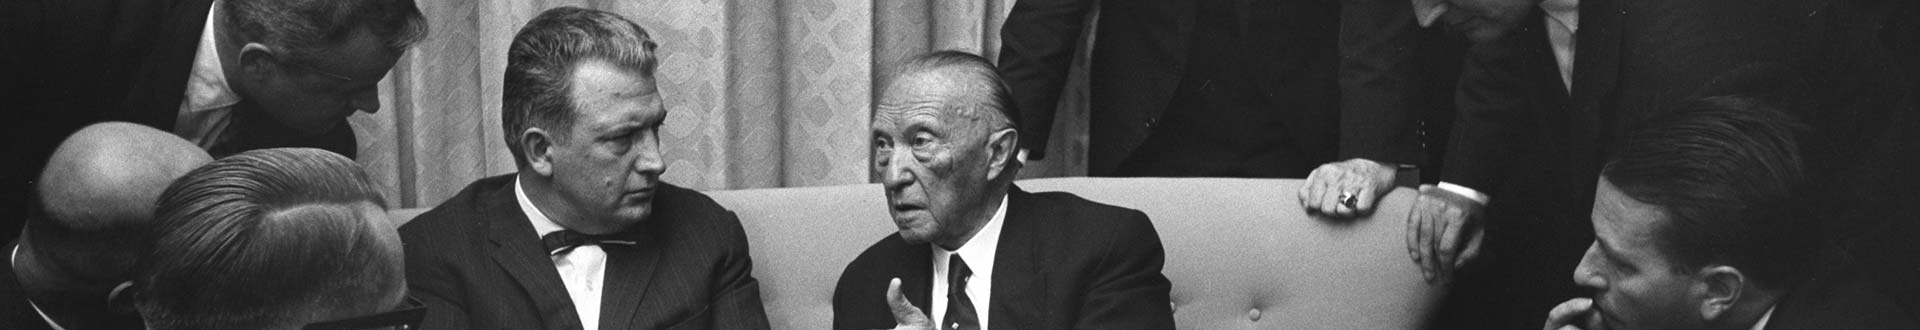 VAP mit Konrad Adenauer 1963